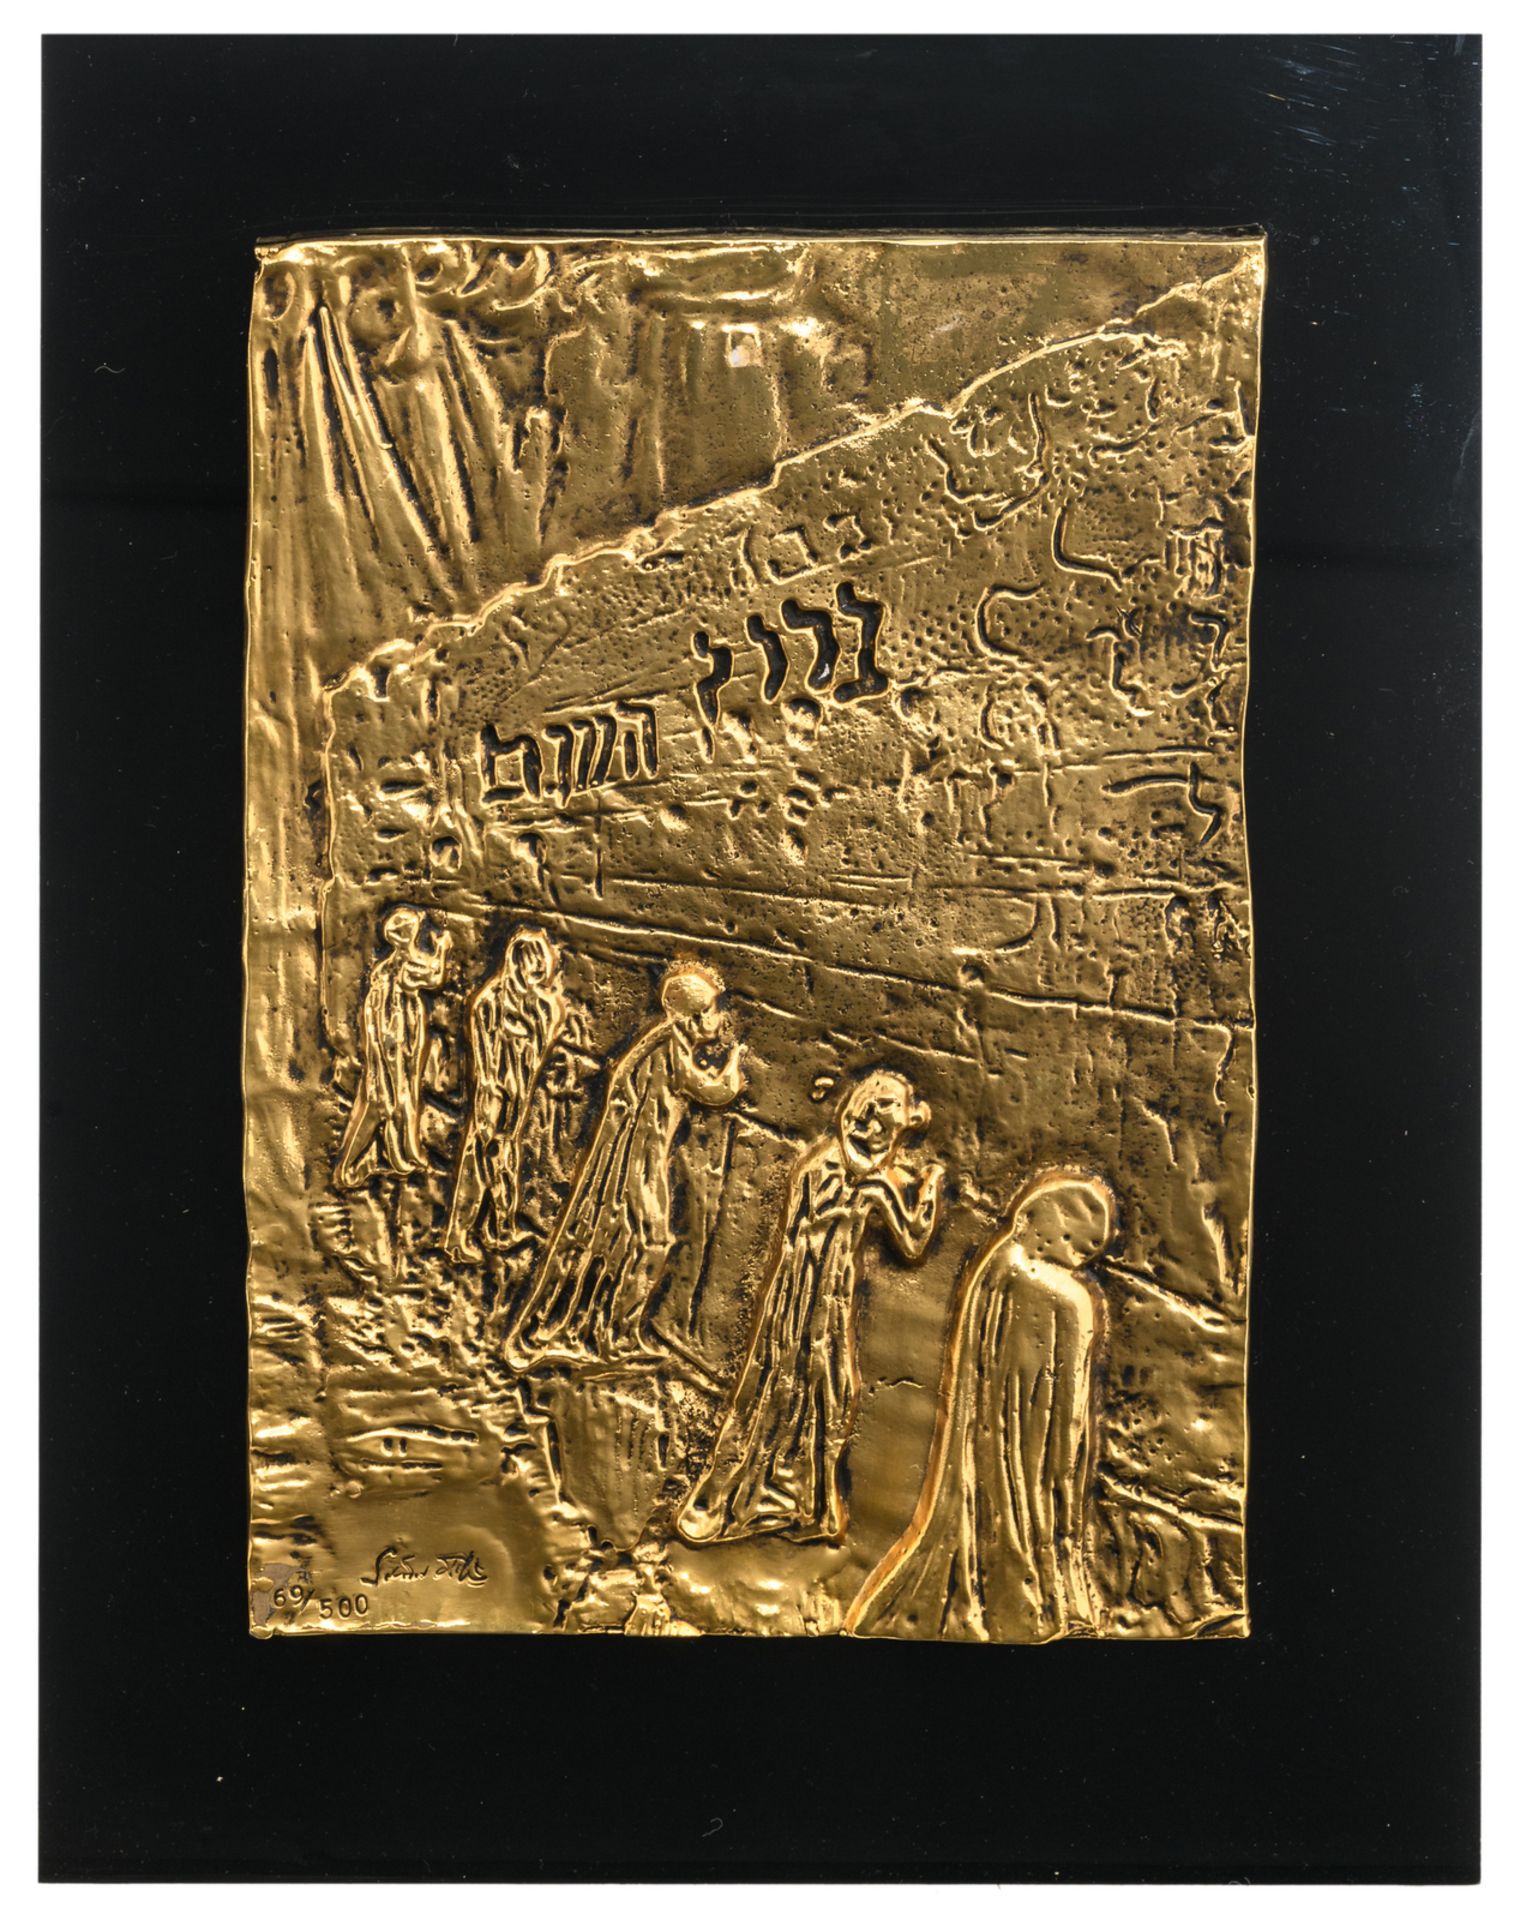 Dali S., 'Le Mur des Lamentations', a gilt bronze plaque set on a black plexi ground, ex. 69/500, in